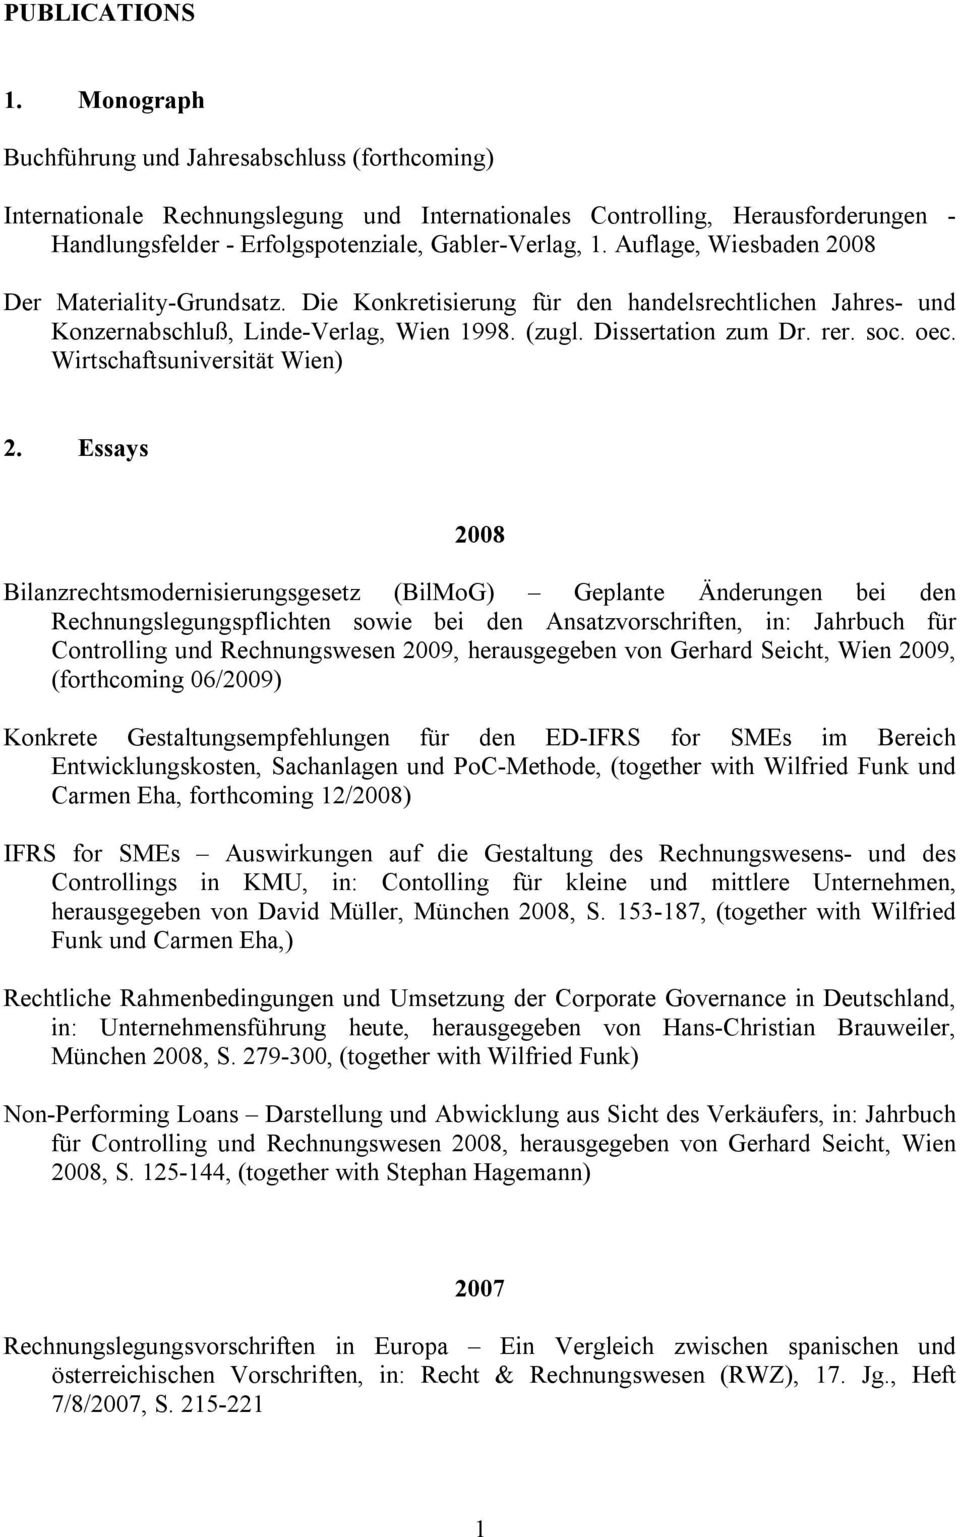 Auflage, Wiesbaden 2008 Der Materiality-Grundsatz. Die Konkretisierung für den handelsrechtlichen Jahres- und Konzernabschluß, Linde-Verlag, Wien 1998. (zugl. Dissertation zum Dr. rer. soc. oec.